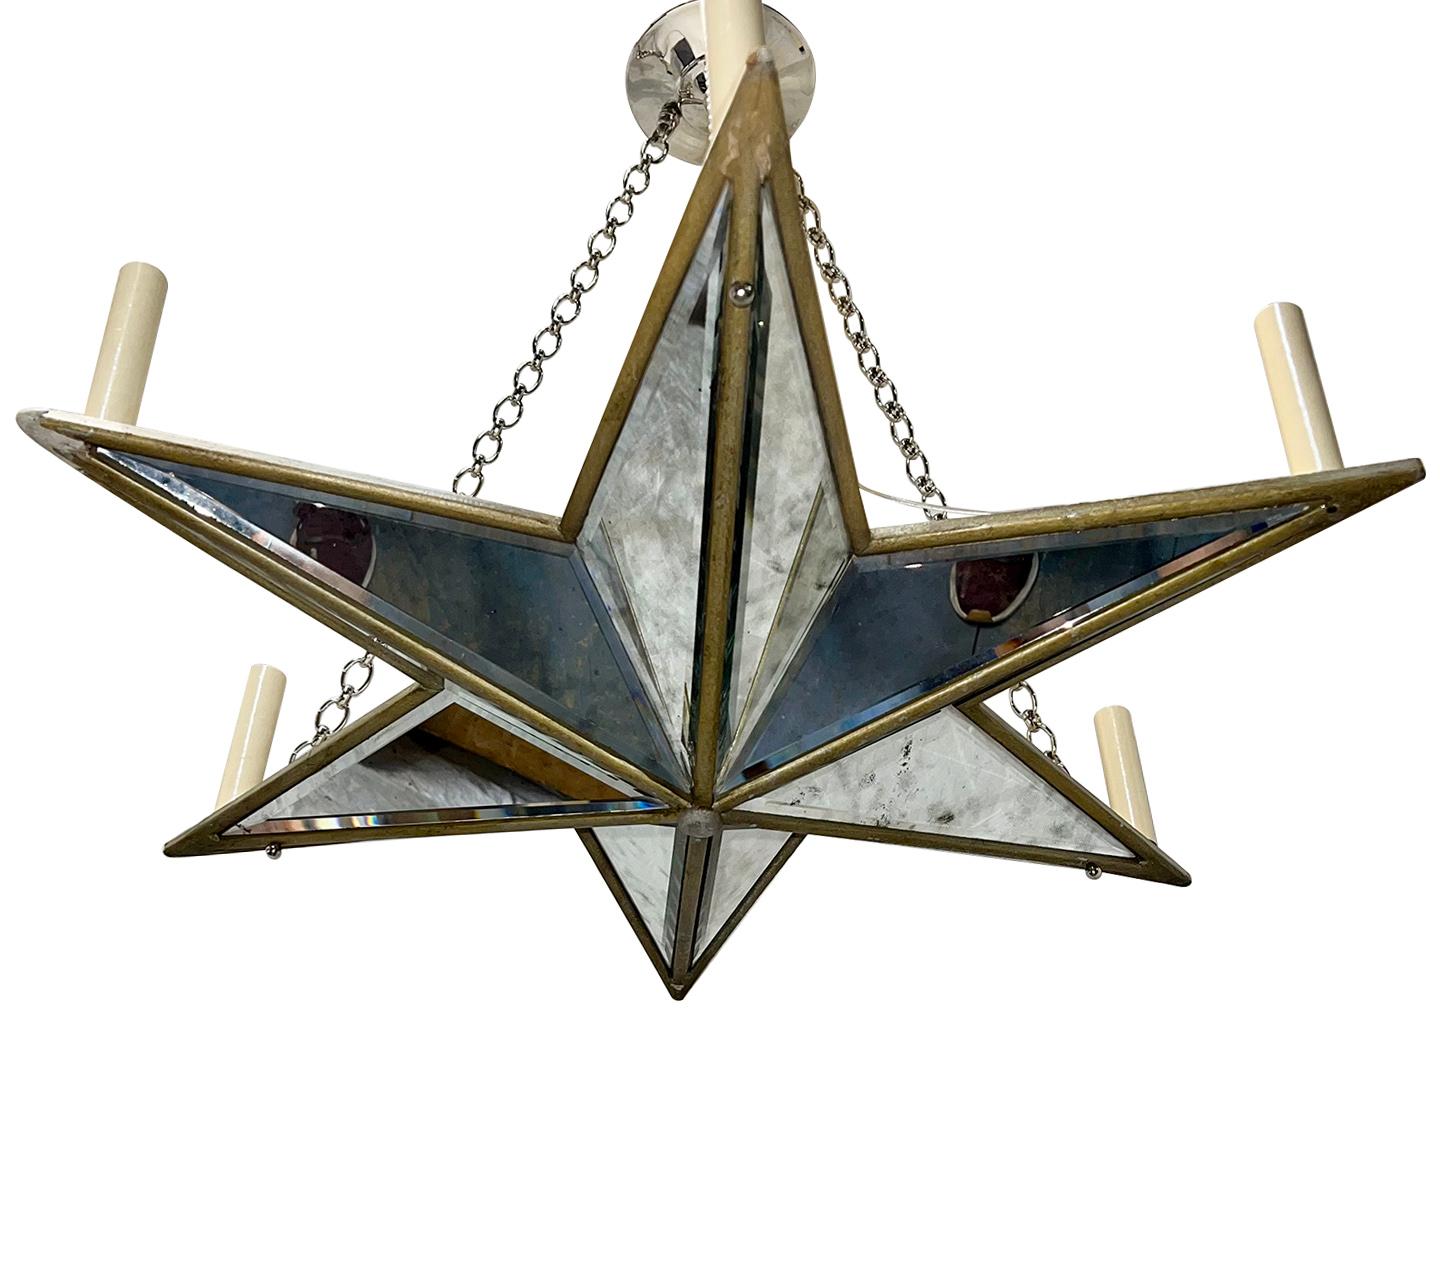 Ein französischer sternförmiger Kronleuchter mit 6 Lichtern aus den 1960er Jahren.

Abmessungen:
Geschenk Tropfen: 25